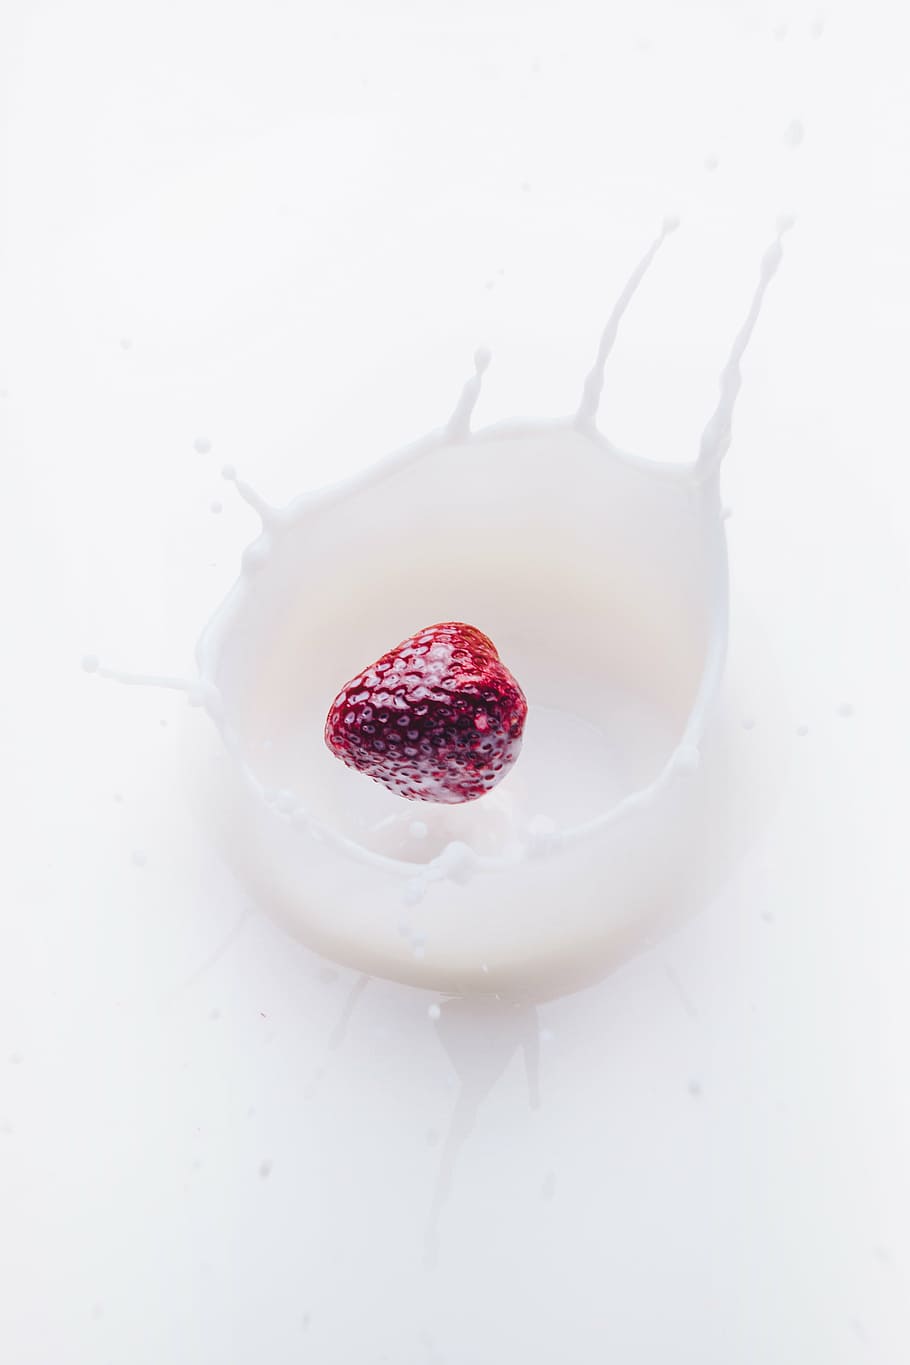 fresa, fotografía de leche, fruta, caída, blanco, líquido, leche, comida, comida y bebida, baya